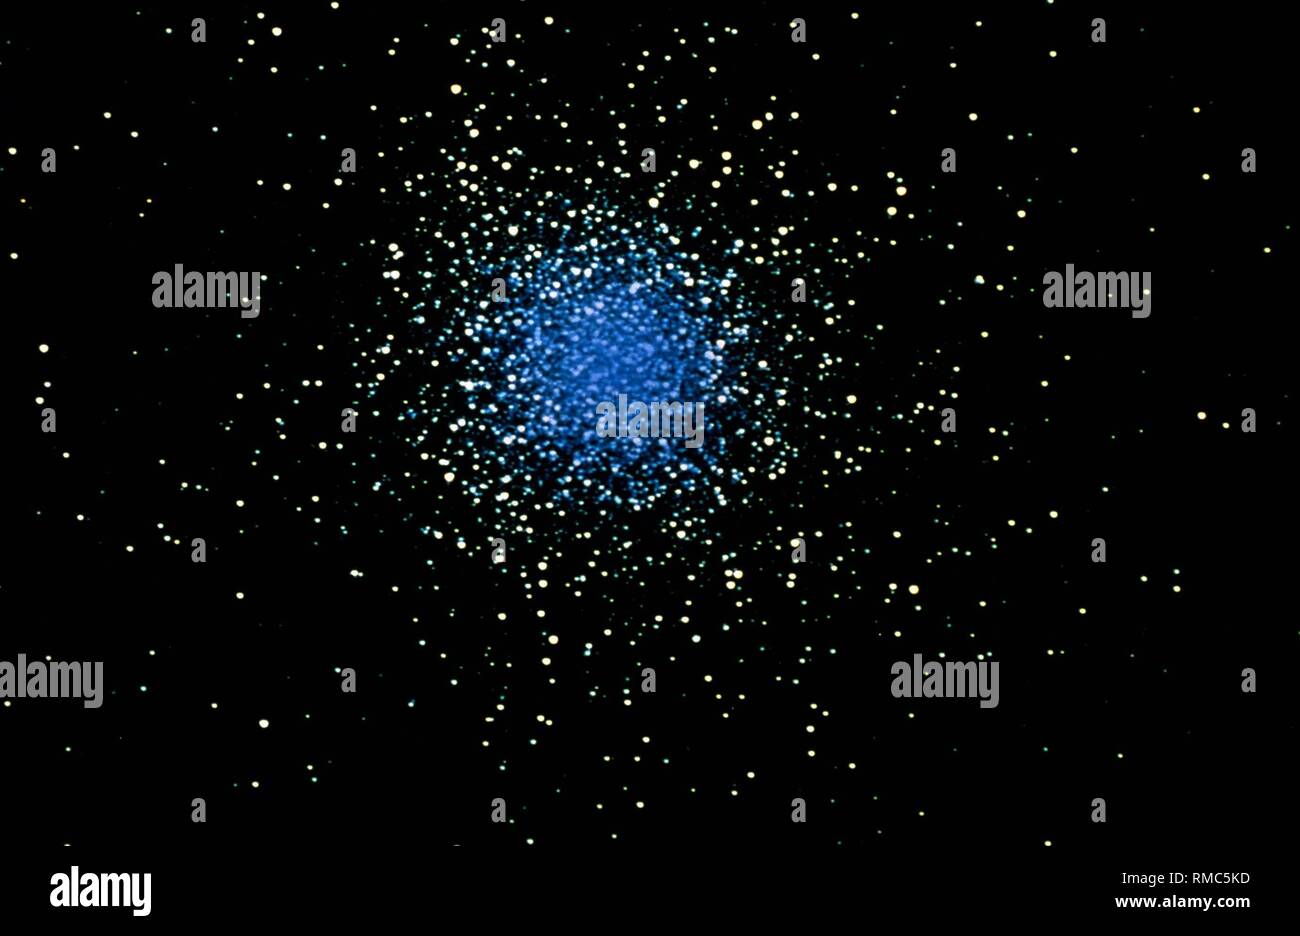 El gran cúmulo globular (M13) en la constelación de Hércules. El extremadamente estables estelares esféricos se llaman cúmulos globulares, que constan de 50 a 50 millones de estrellas y pertenecen a los objetos más antiguos de la Vía Láctea. Foto sin fecha, probablemente a partir de la década de 1980. Foto de stock